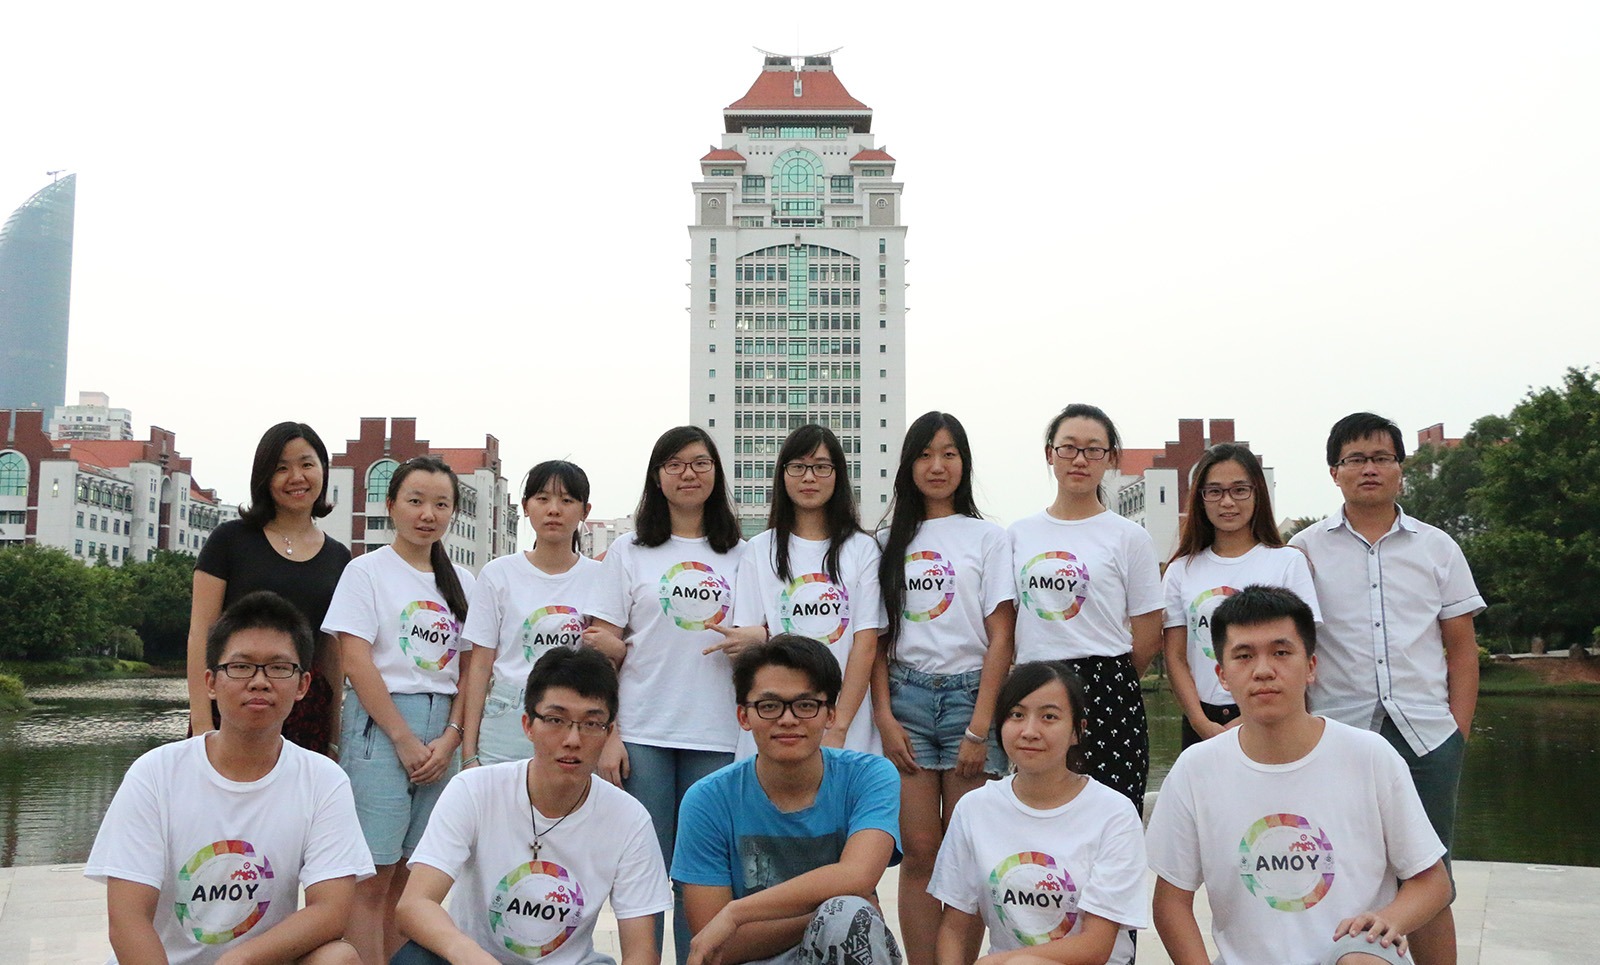 بورسیه دانشگاه شیامن چین برای لیسانس ، فوق لیسانس و دکترا 2020-2019